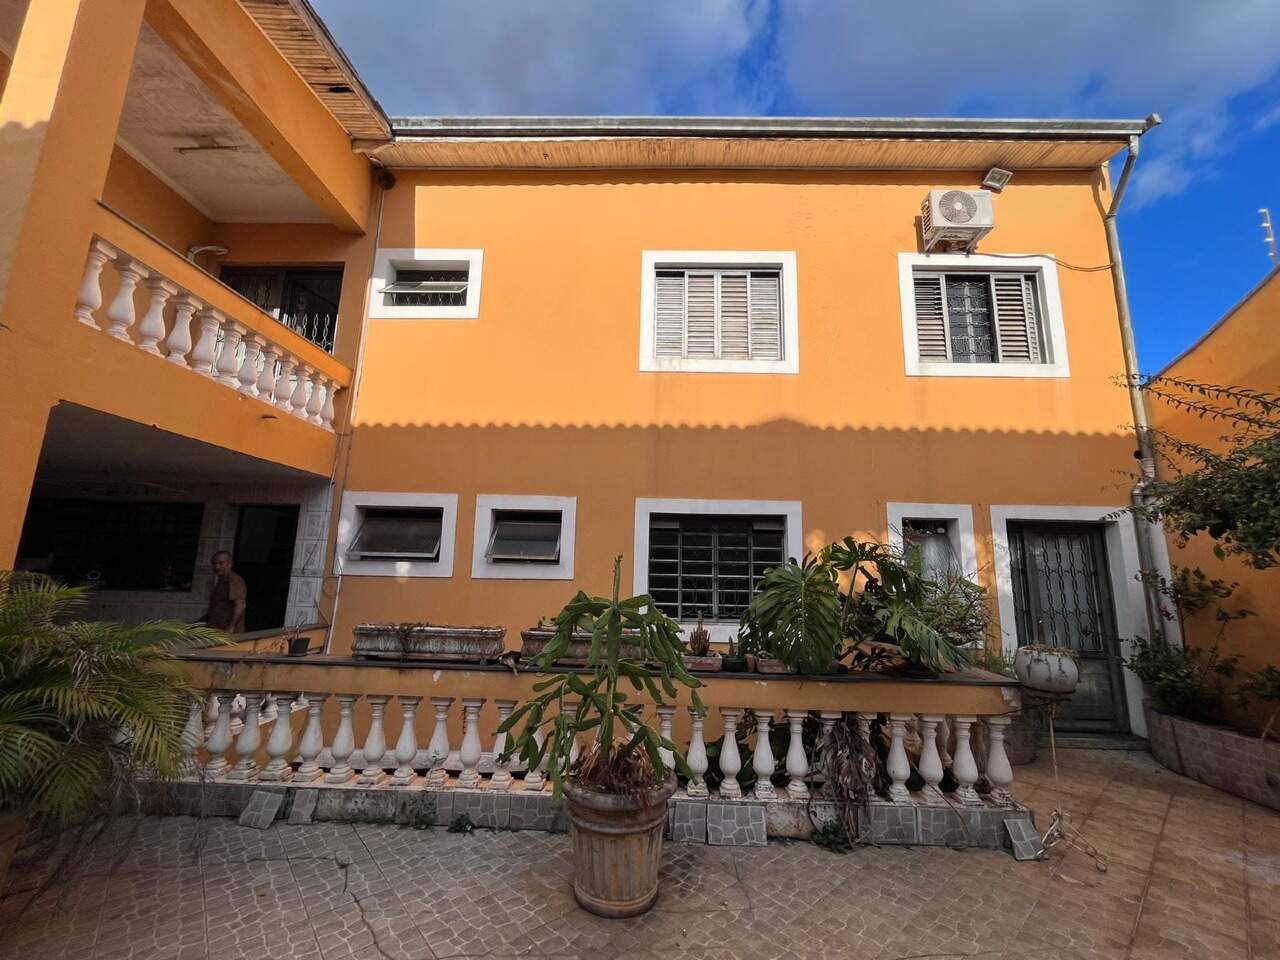 Casa à venda, 3 quartos, sendo 1 suíte, 3 vagas, no bairro Jardim Abaeté em Piracicaba - SP